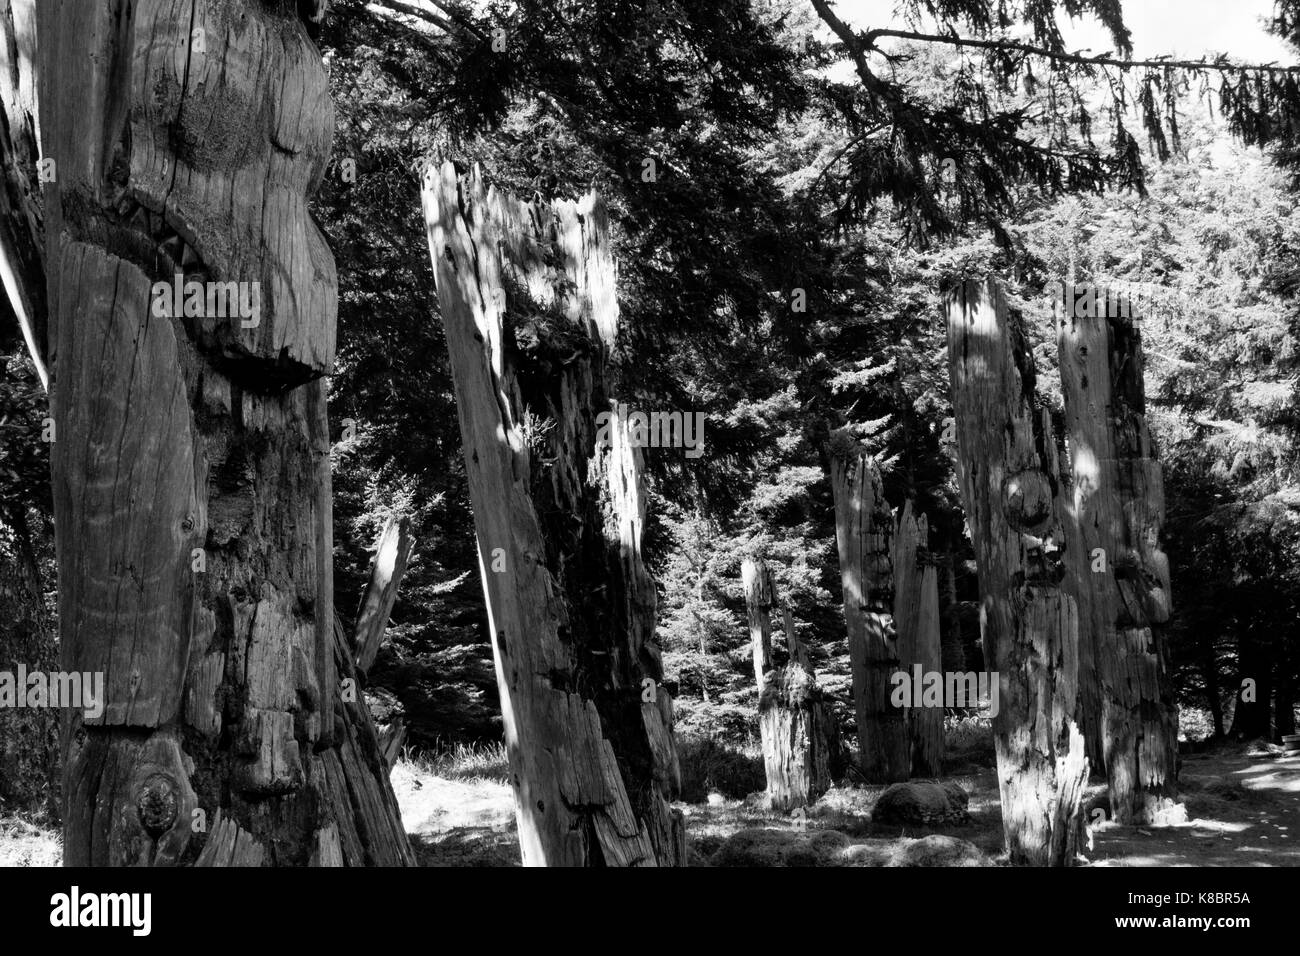 Les poteaux funéraires, également connu sous le nom de totems, de SGang Gwaay world heritage site, Haida Gwaii, Premières Nations, British Columbia, Canada Banque D'Images